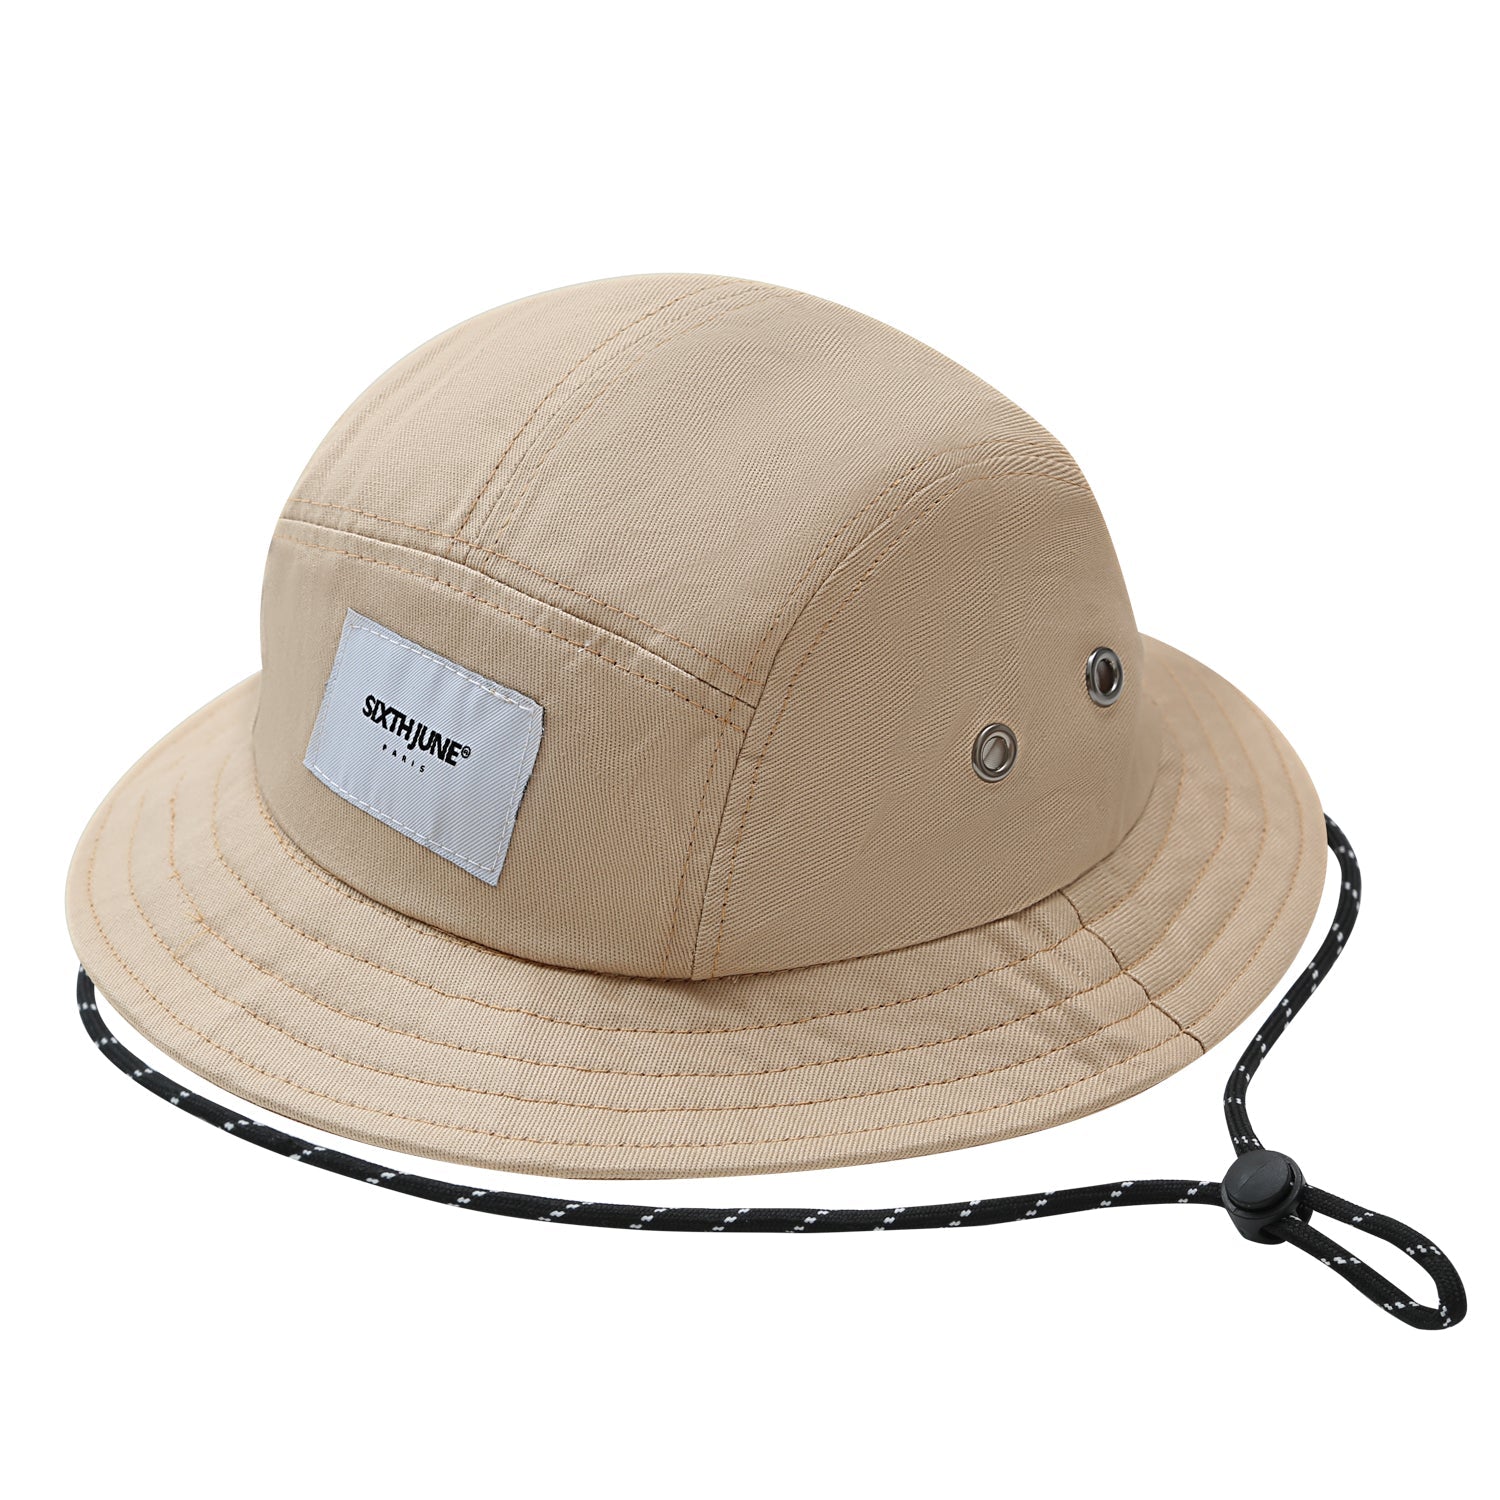 Drawcord cotton bucket hat Beige